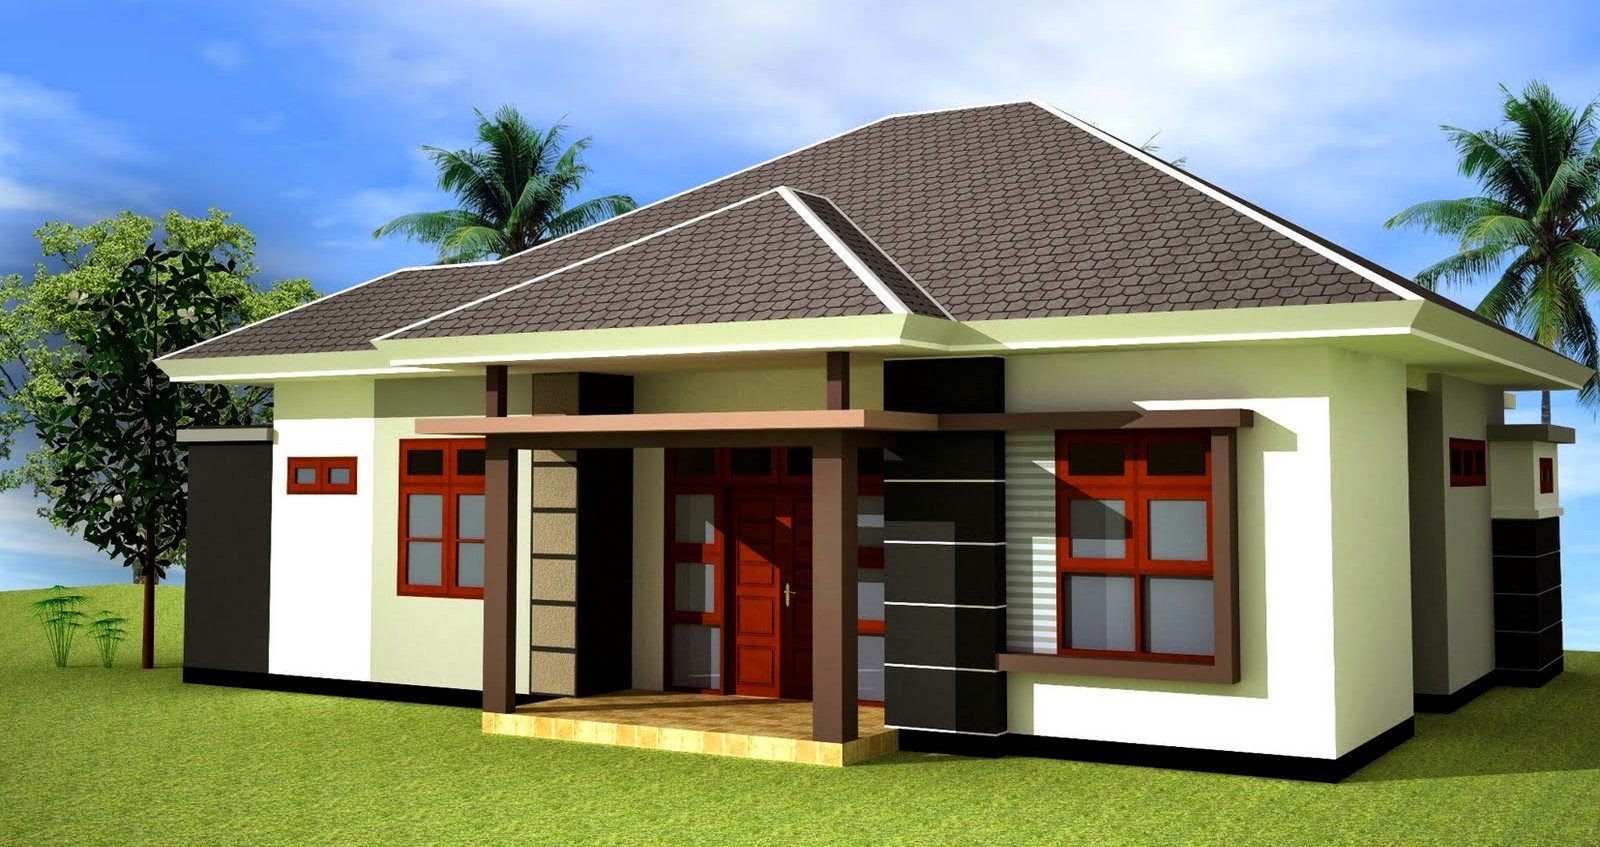 iModerni Home Design Pos Trend Home Design And Decor 